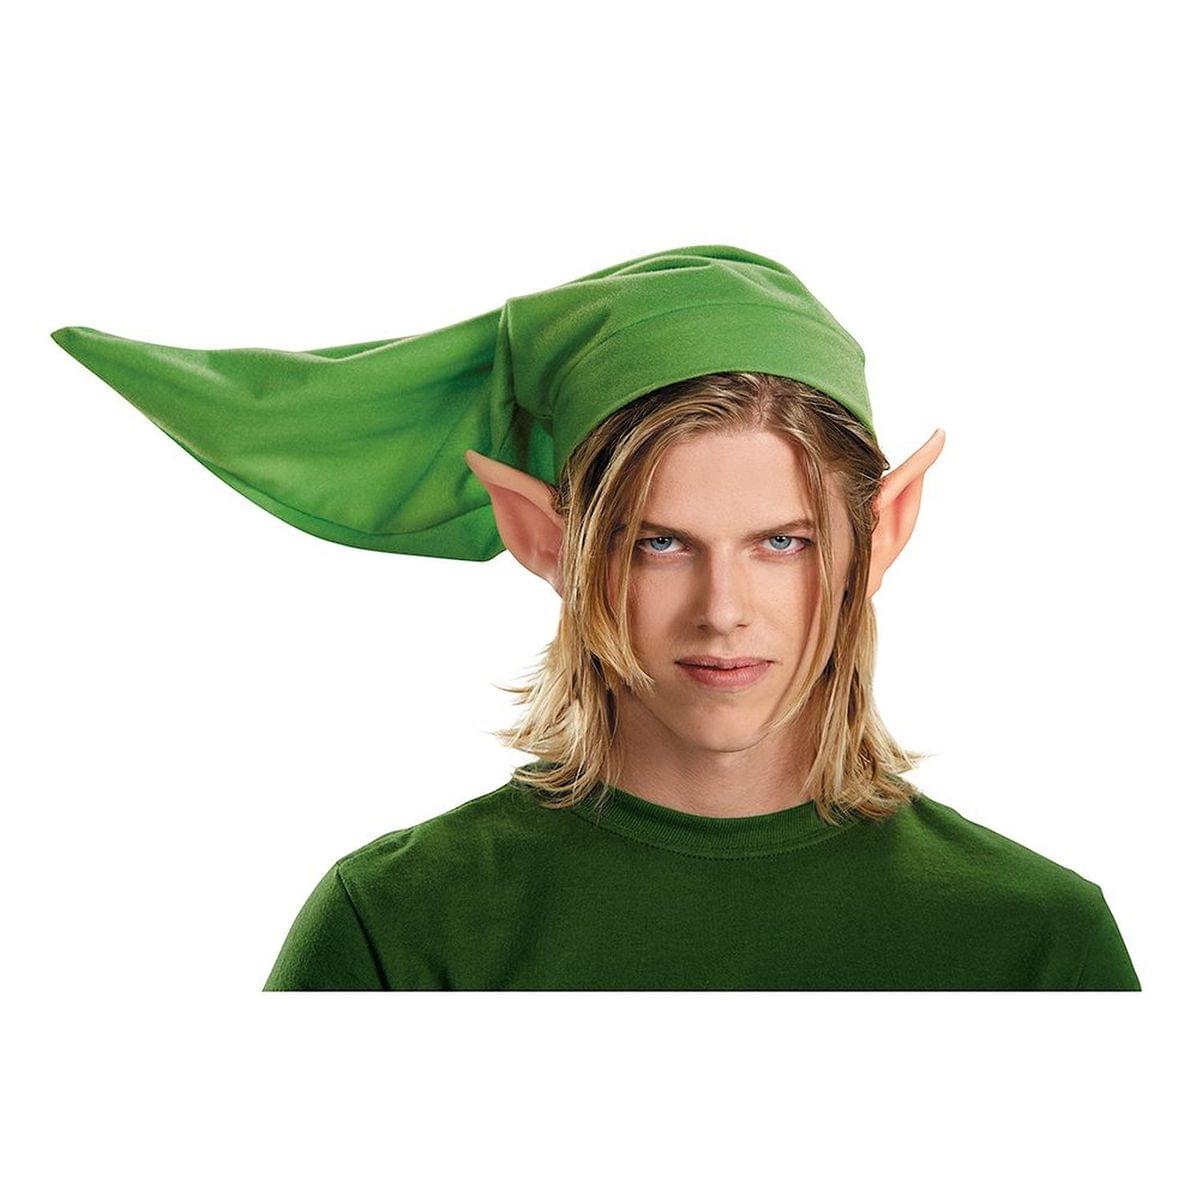 Legend of Zelda Link Adult Costume Kit